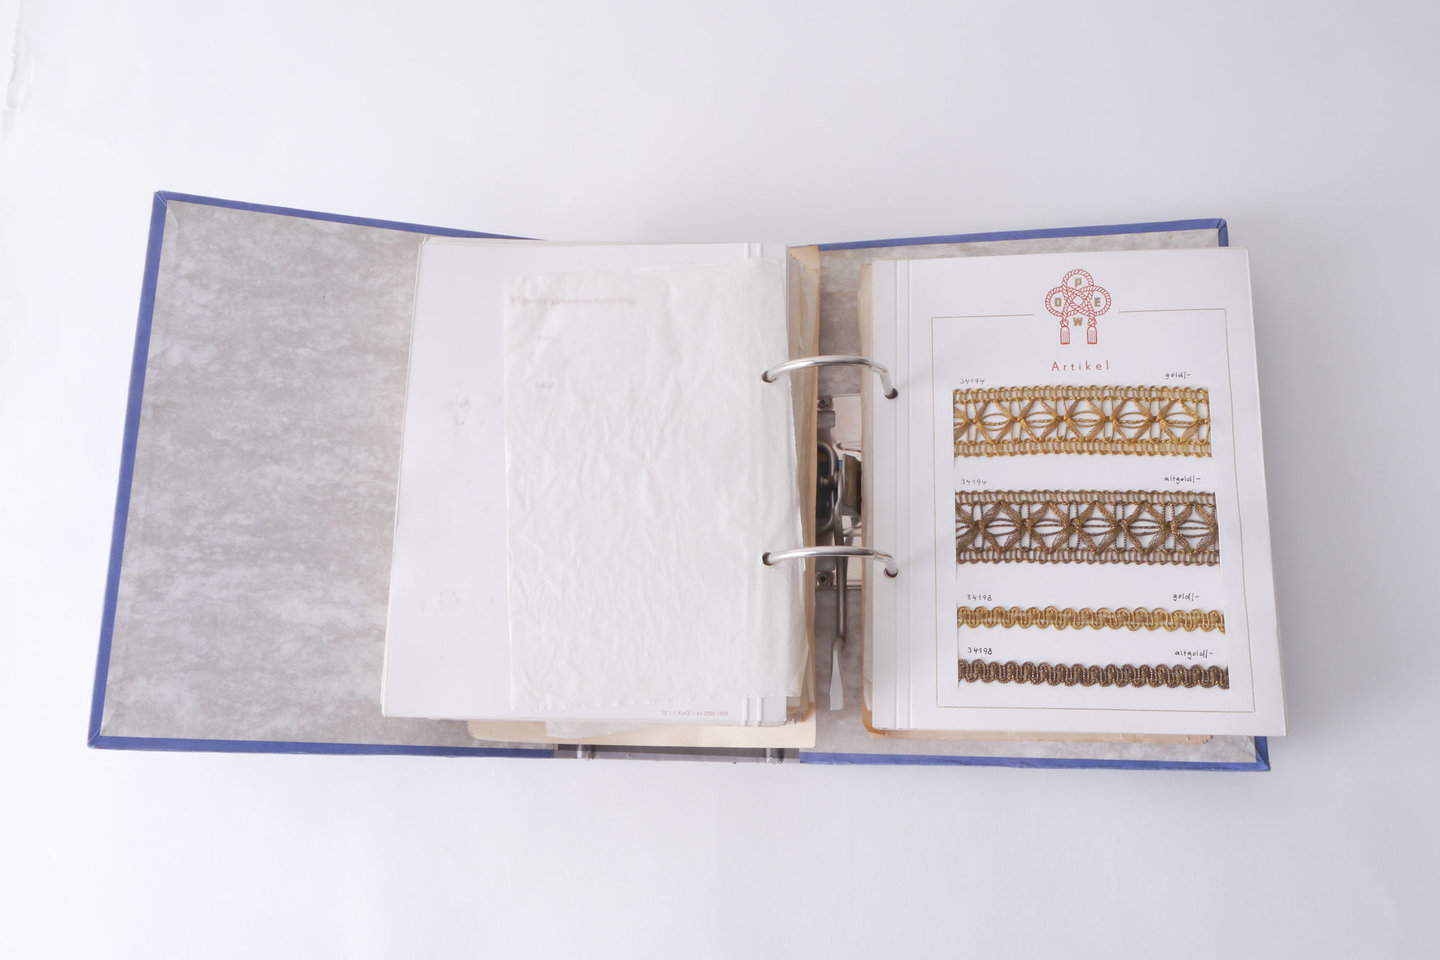 Staalboek met textielstalen om passement te vervaardigen